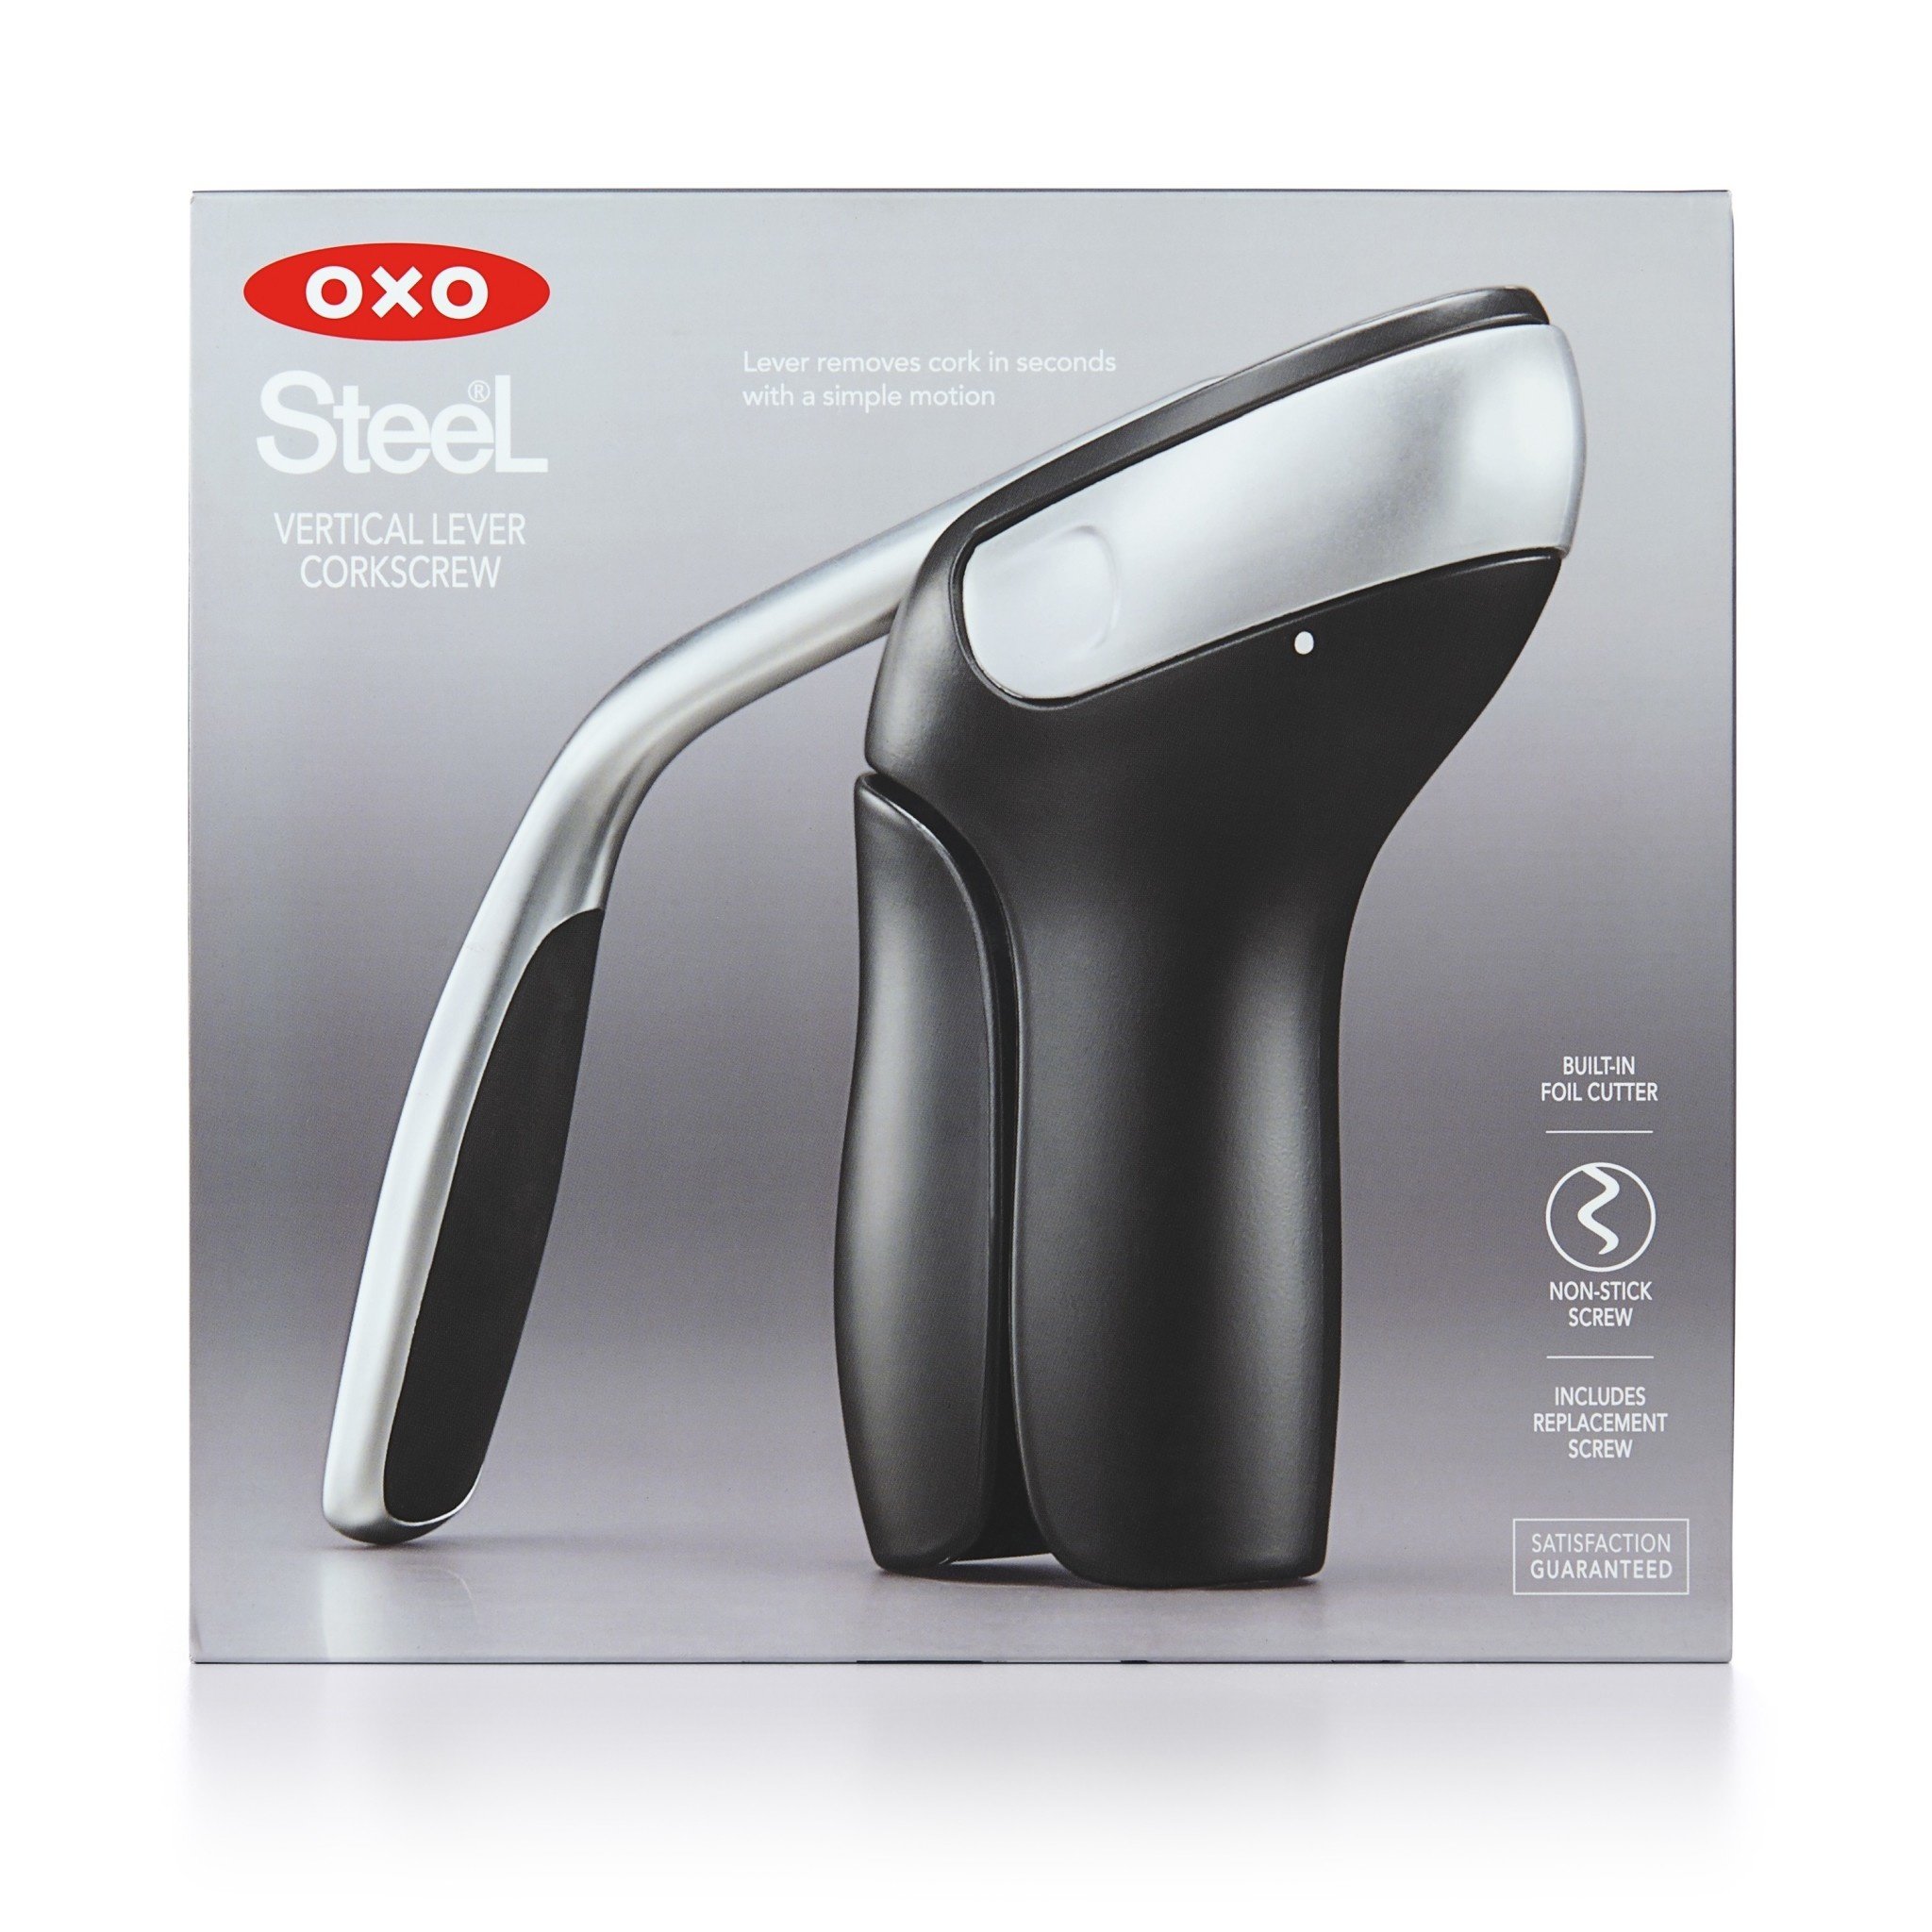 OXO Softworks Corkscrew